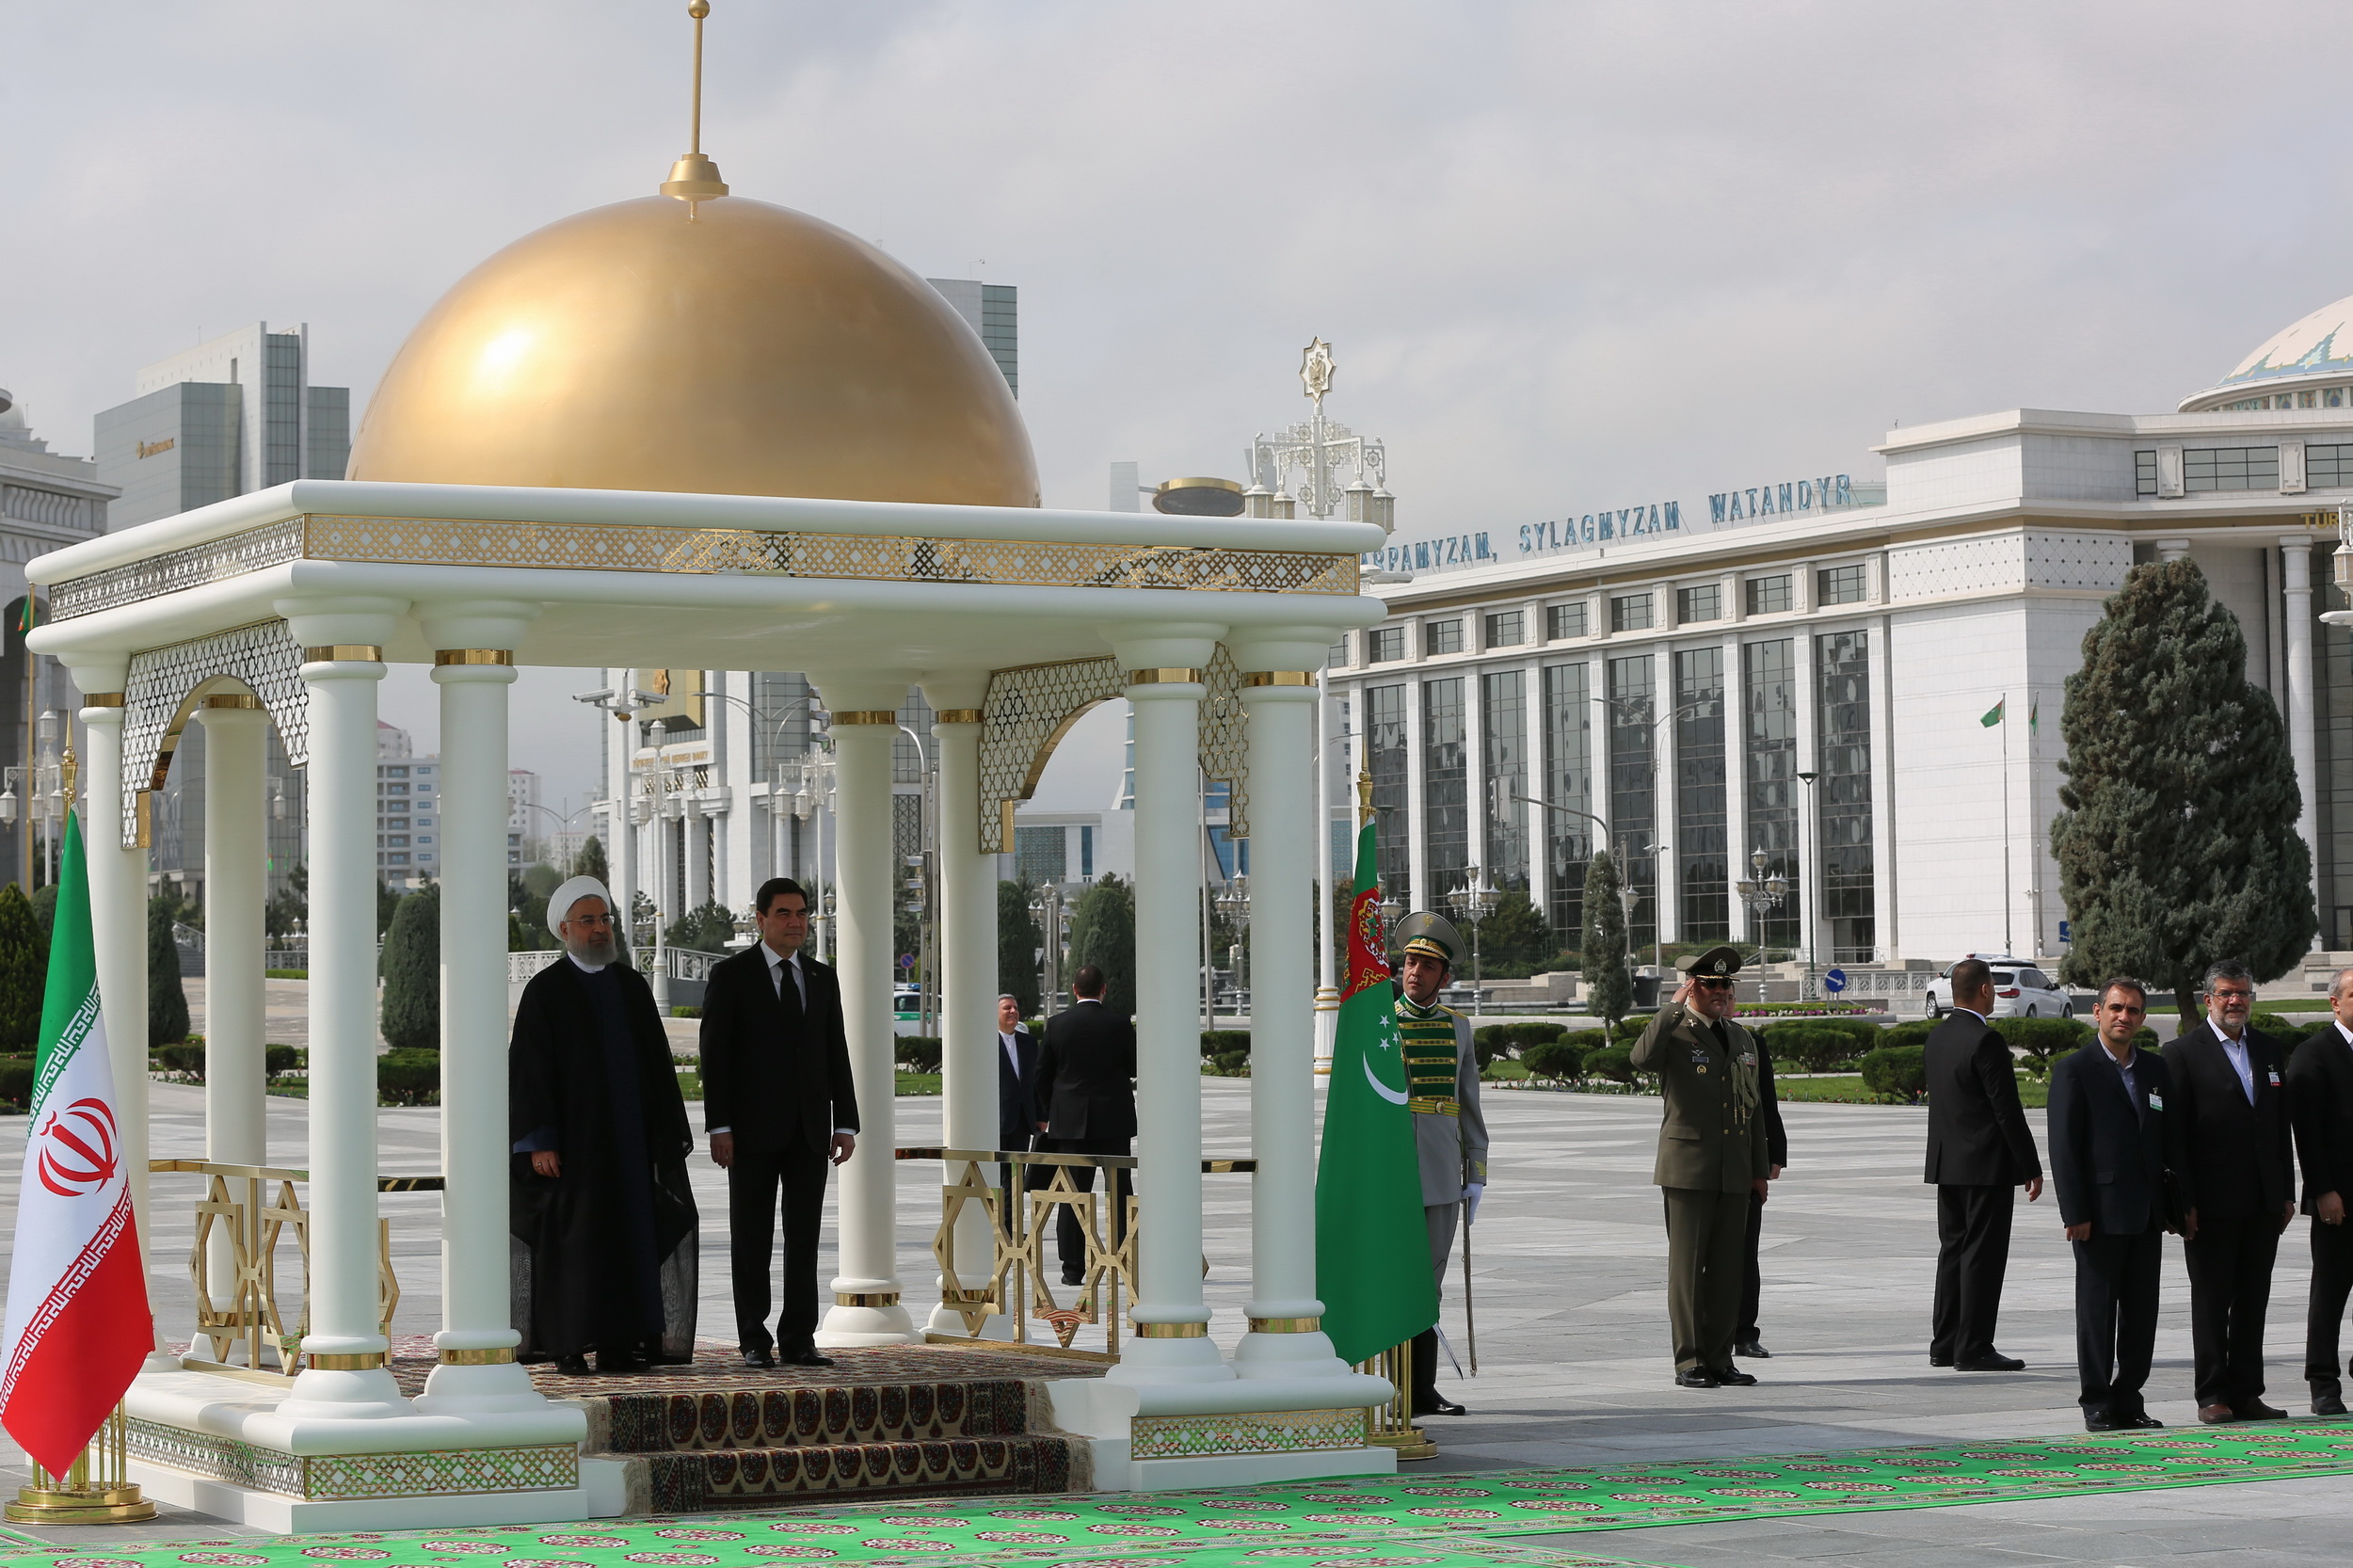 مراسم استقبال رسمی از دکتر روحانی در کاخ ریاست جمهوری ترکمنستان / مذاکرات مشترک و امضای اسناد همکاری